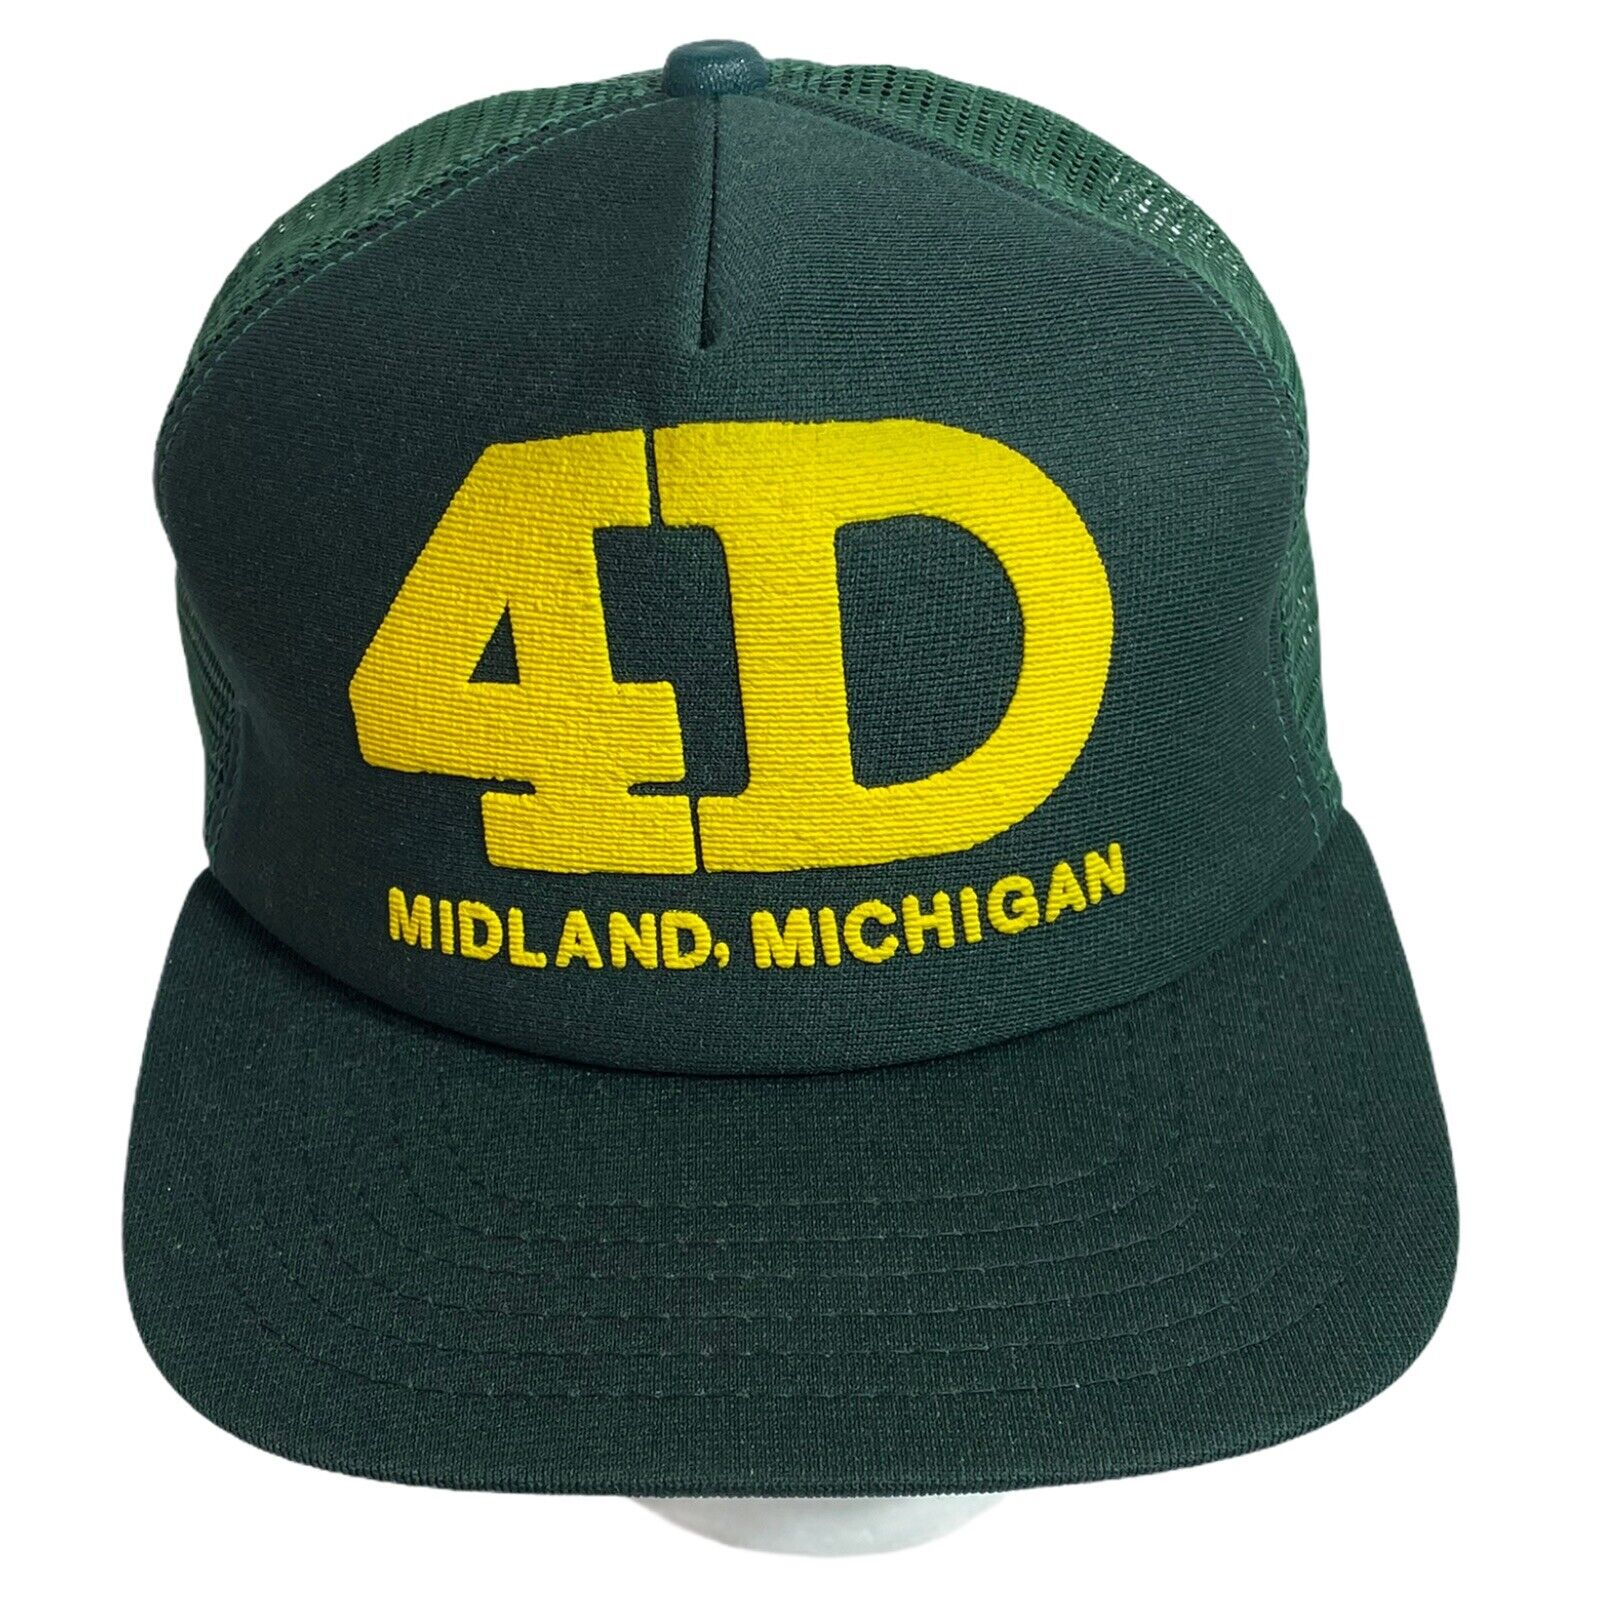 Green USA Mesh New Made MI | Vintage Era in eBay the 4D Hat Trucker Midland